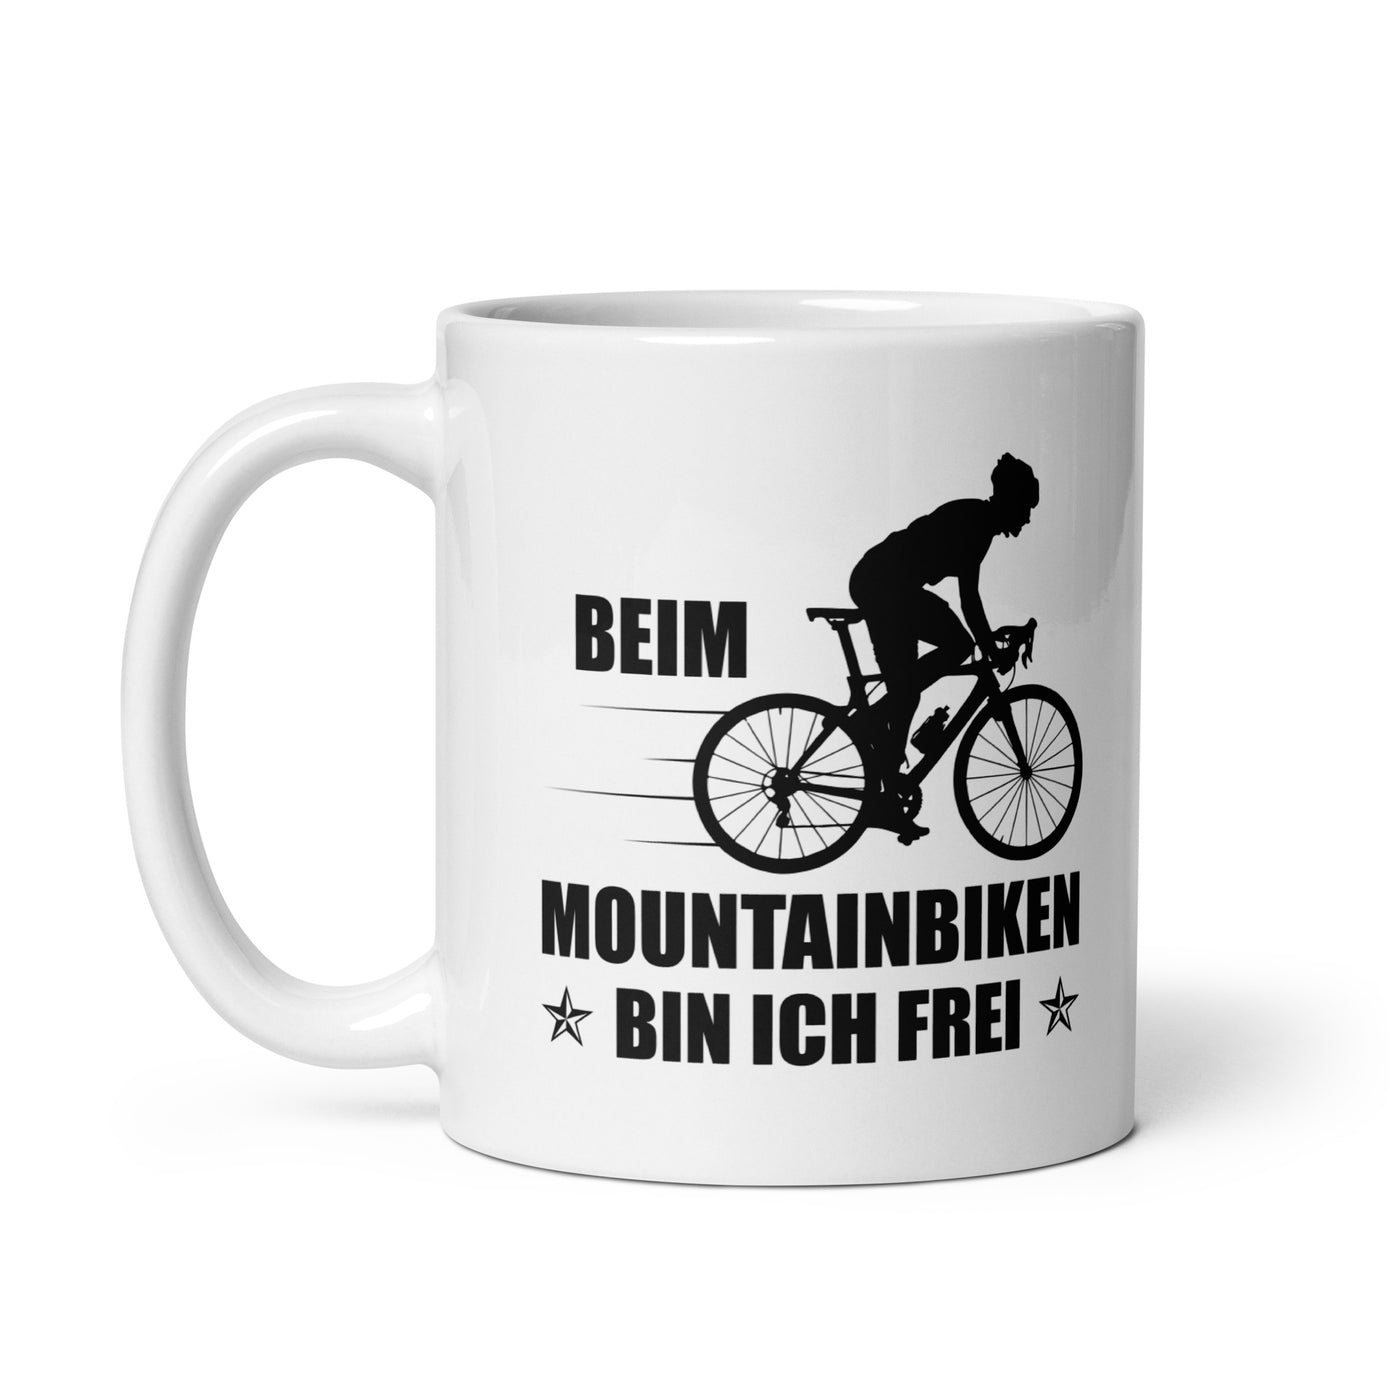 Beim Mountainbiken Bin Ich Frei 2 - Tasse fahrrad 11oz